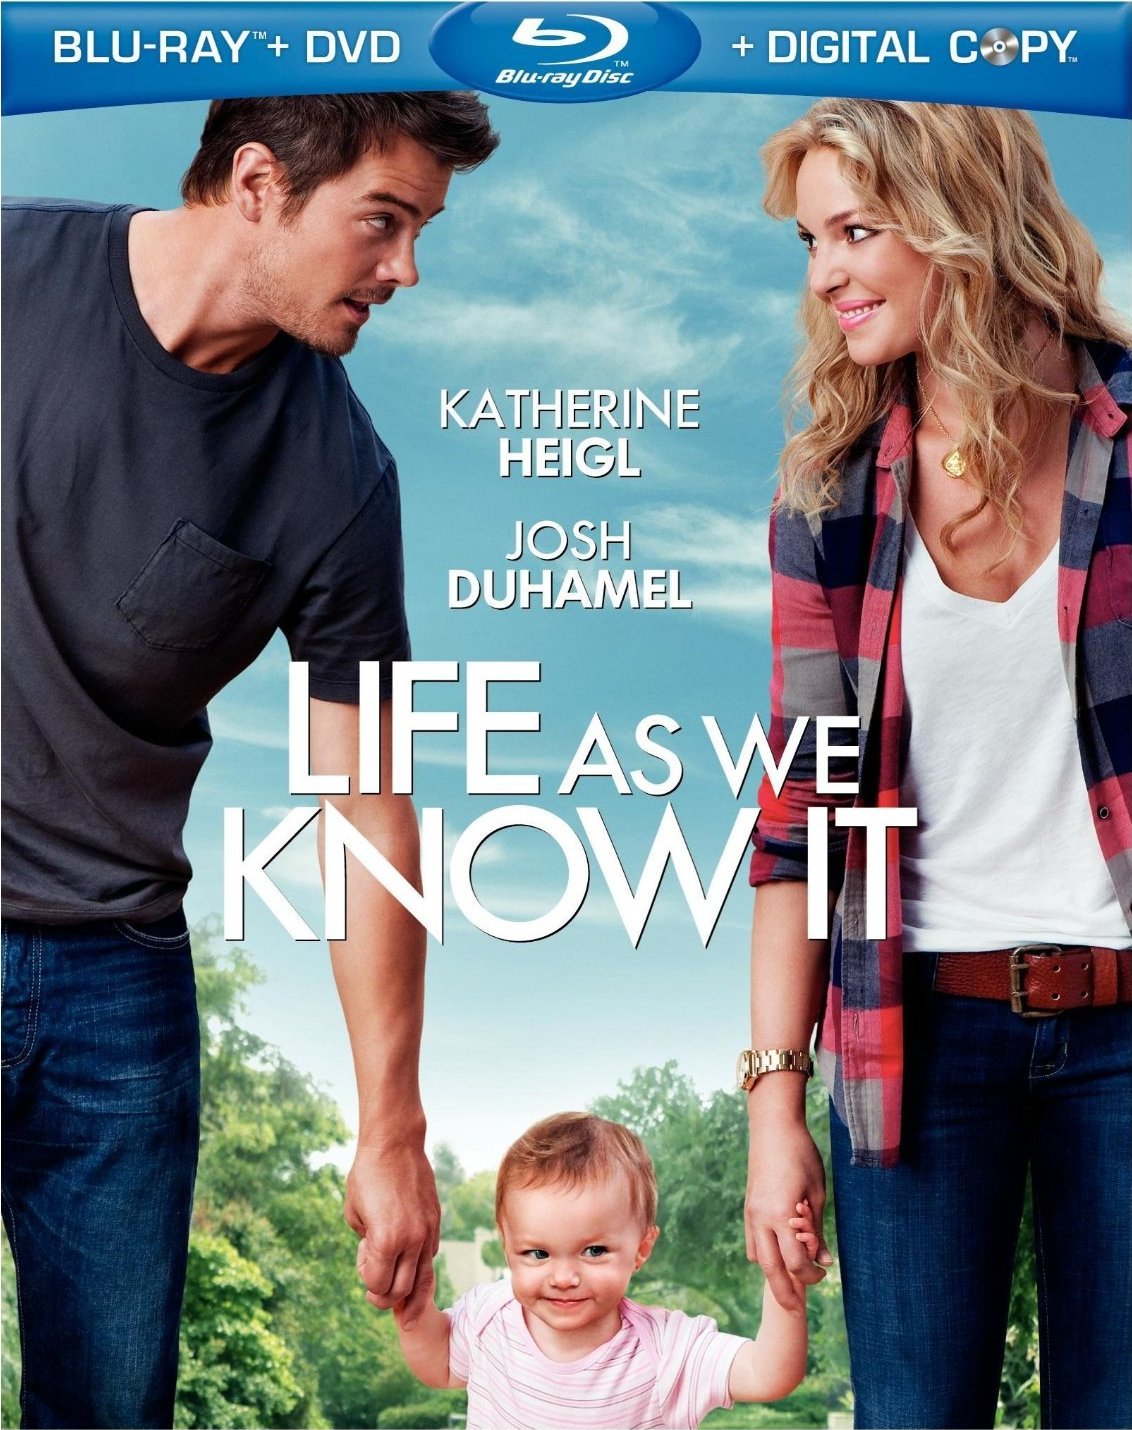 Life as we know it. Джош Дюамель жизнь как она есть. Джош Дюамель и Кэтрин Хейгл. Жизнь, как она есть (2010). Кэтрин Хейгл жизнь как она есть.